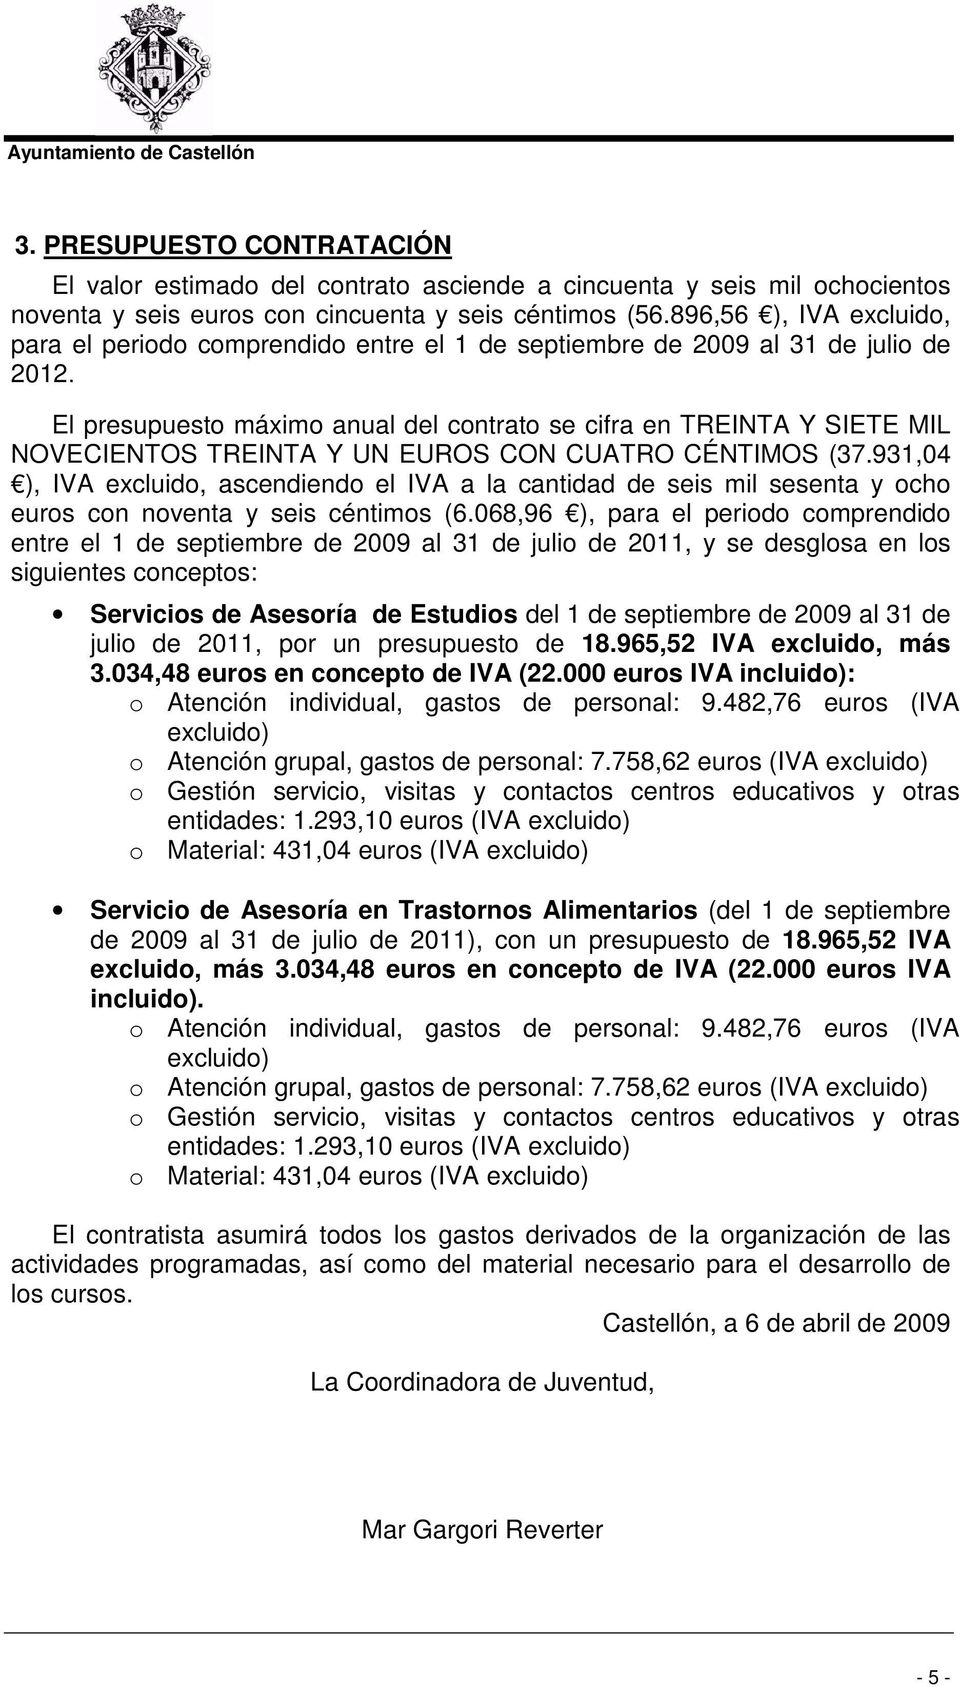 El presupuesto máximo anual del contrato se cifra en TREINTA Y SIETE MIL NOVECIENTOS TREINTA Y UN EUROS CON CUATRO CÉNTIMOS (37.